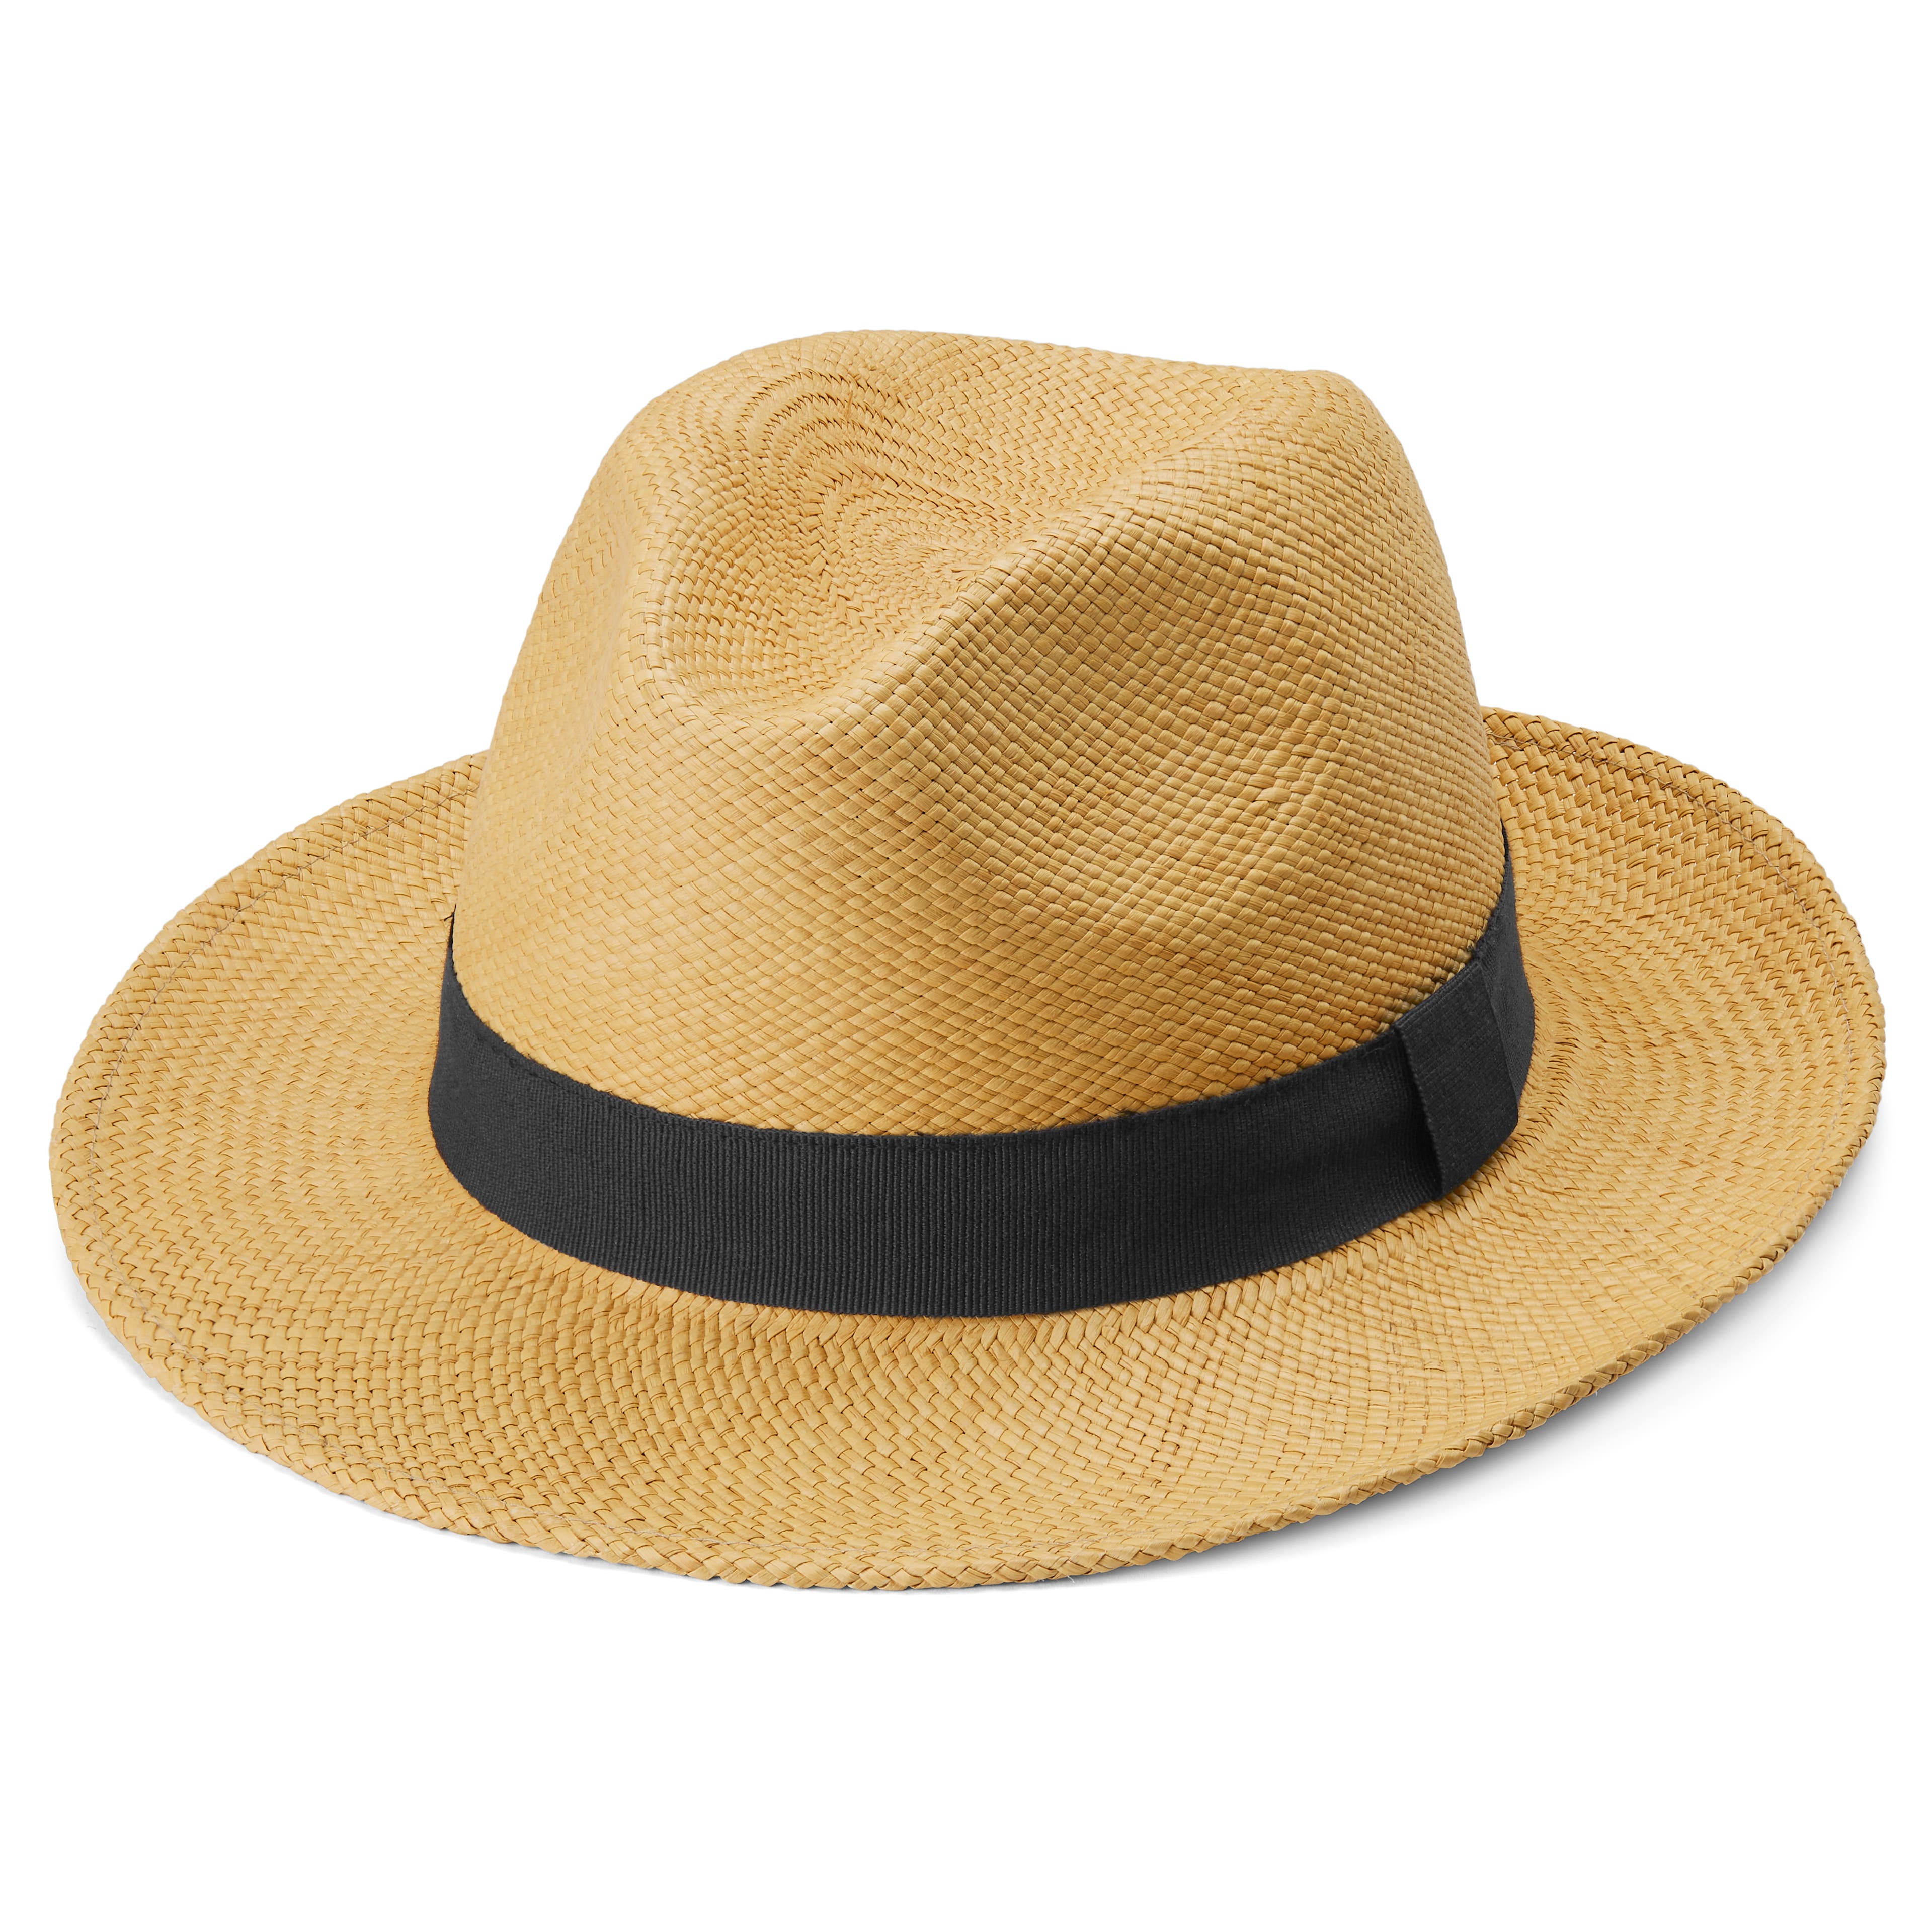 Cappello Panama Pino marrone chiaro con fascia blu